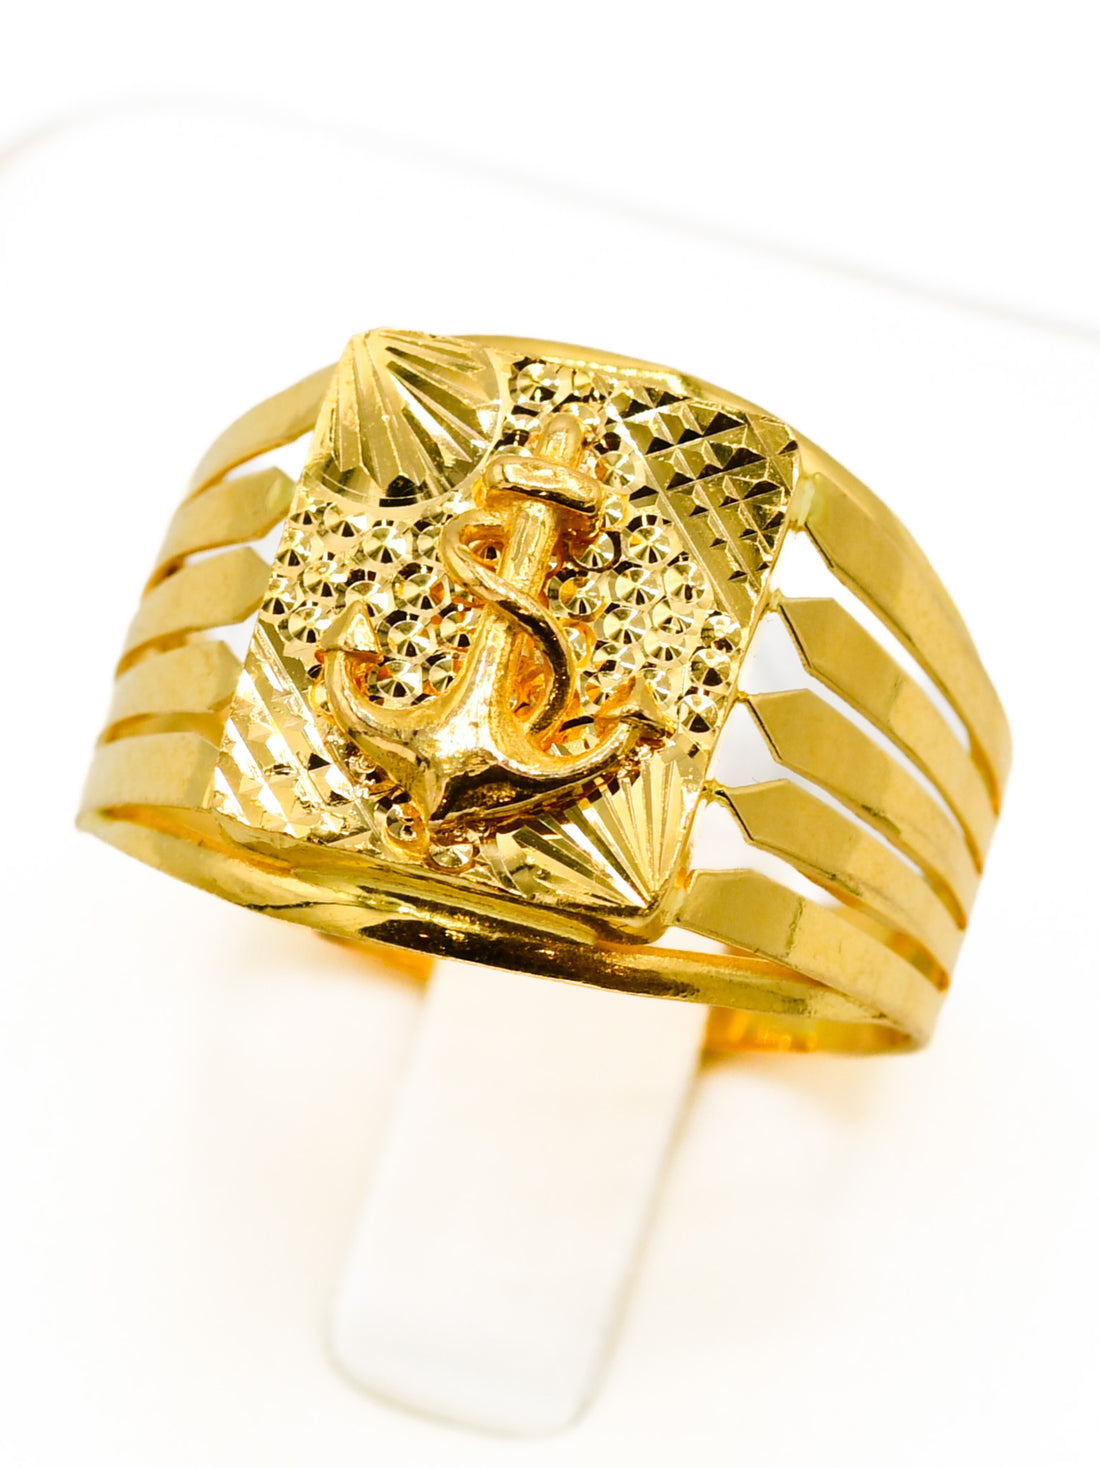 22ct Gold Anchor Mens Ring - Roop Darshan